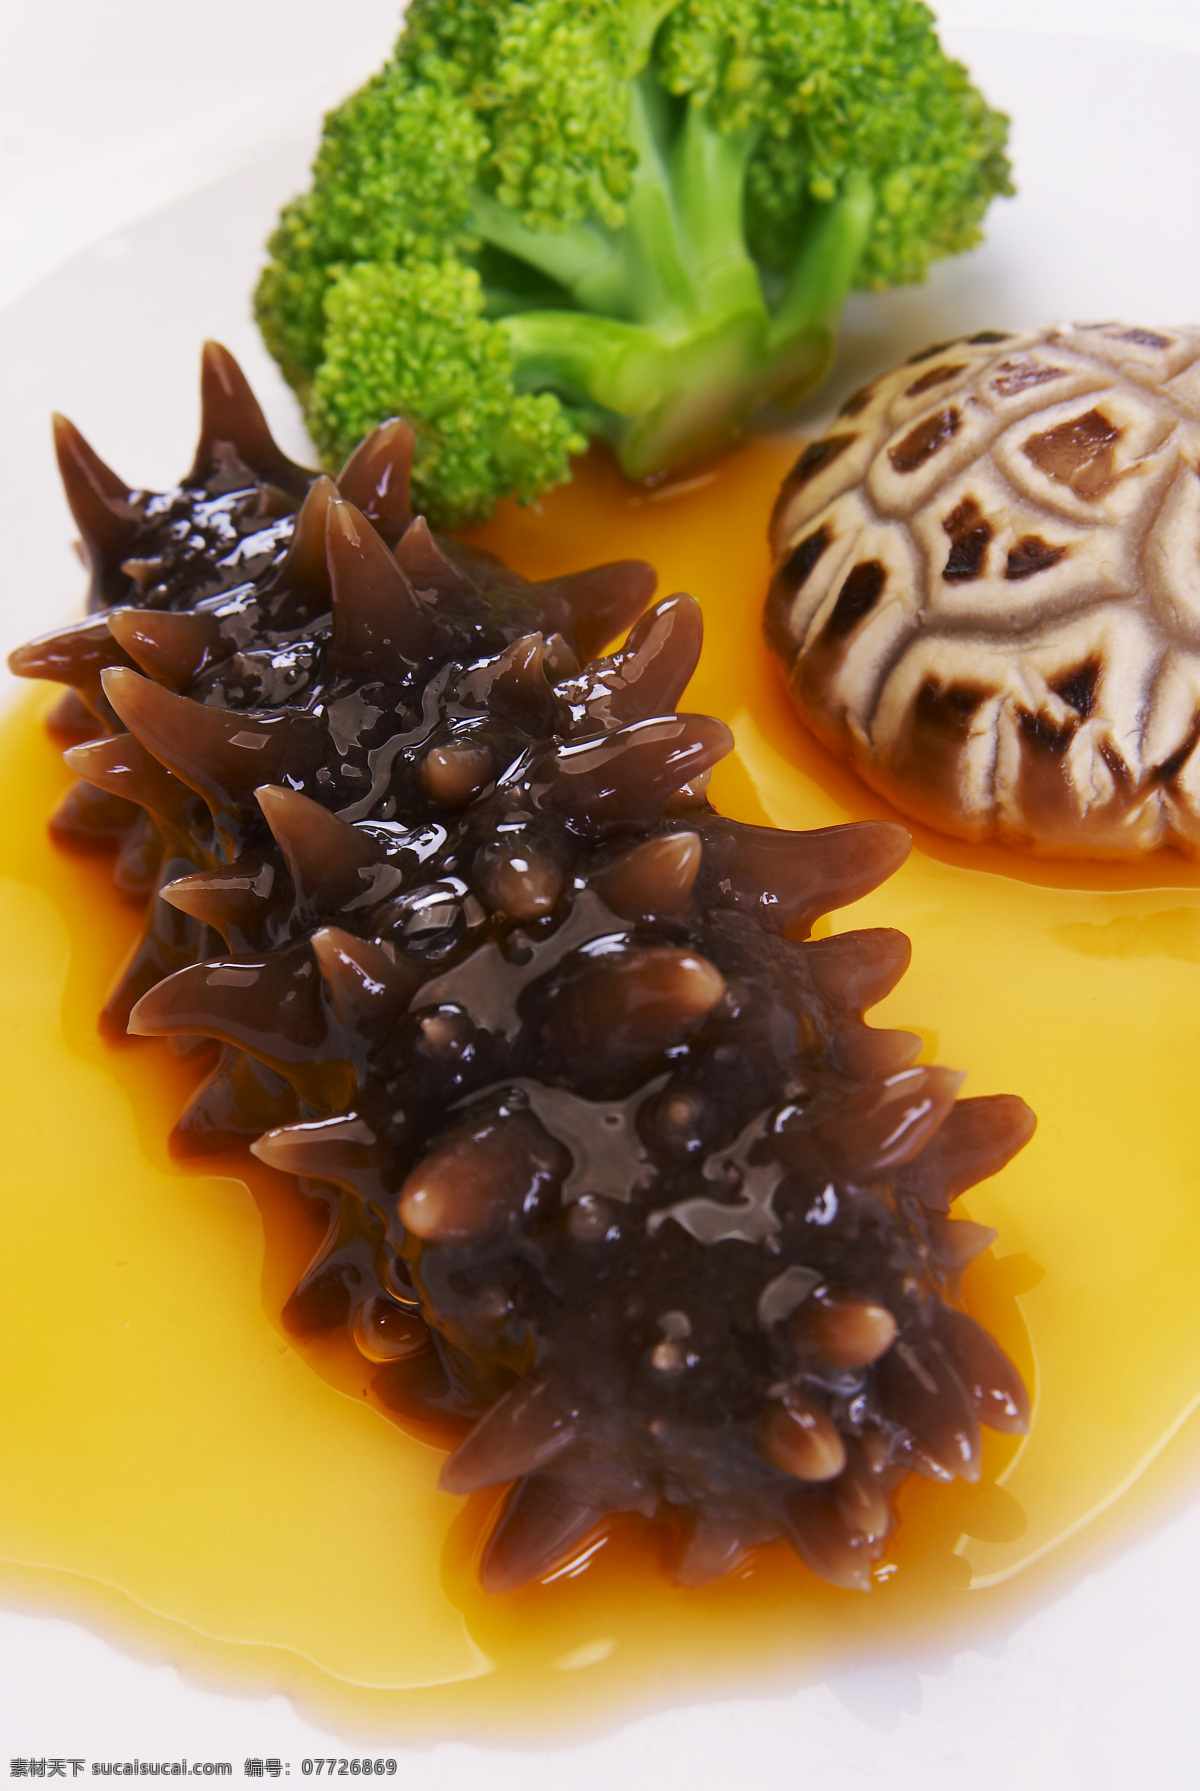 鲍汁海参 西兰花 蘑菇 食品 美食 美味 食物 餐饮美食 传统美食 中国美食 摄影图库